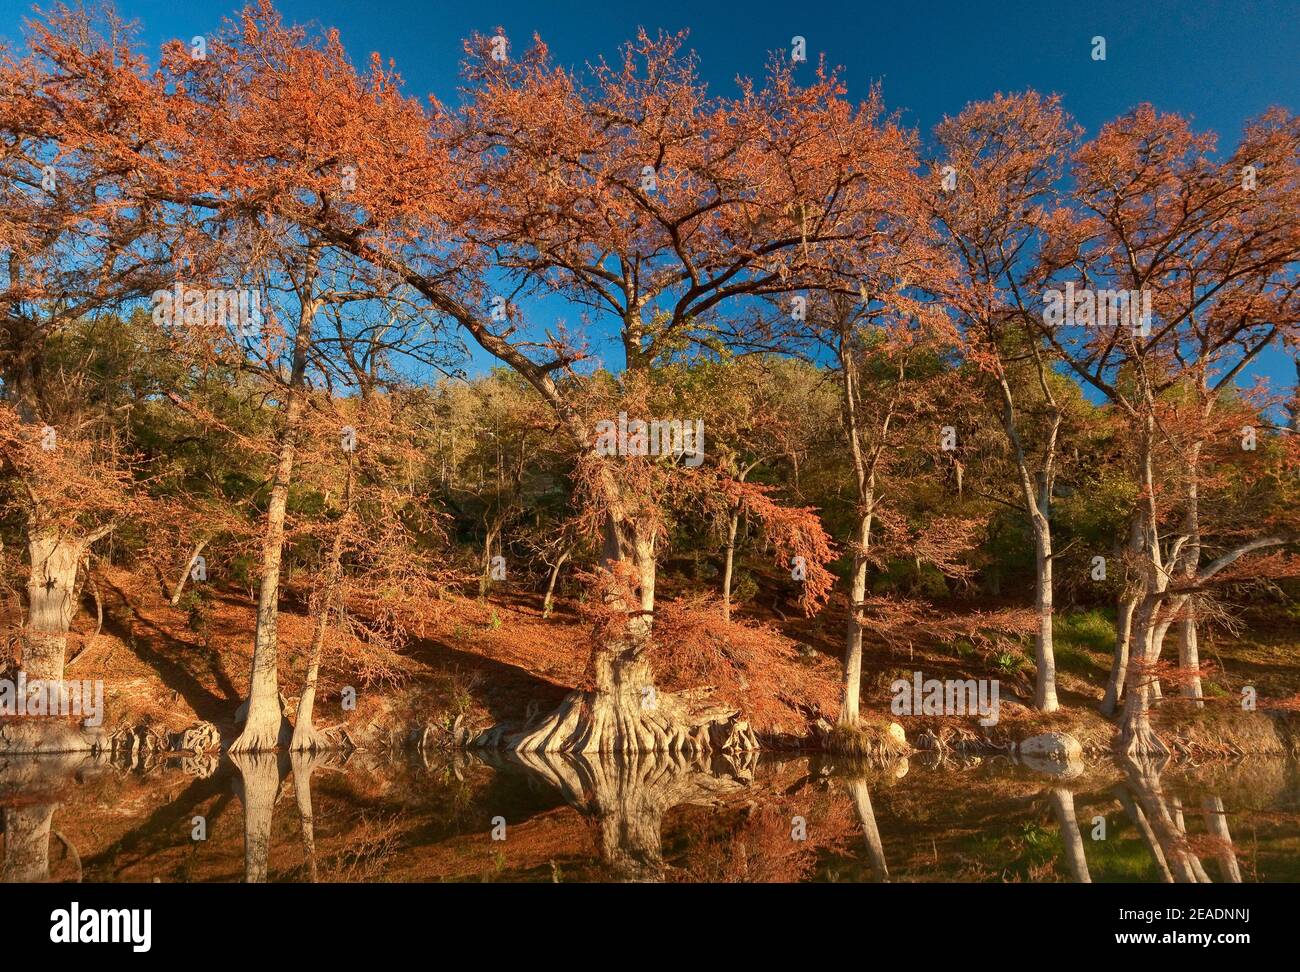 Cyprès chauve le long de la rivière, dans le feuillage d'automne, Guadalupe River State Park près de Bergheim, Texas, États-Unis Banque D'Images